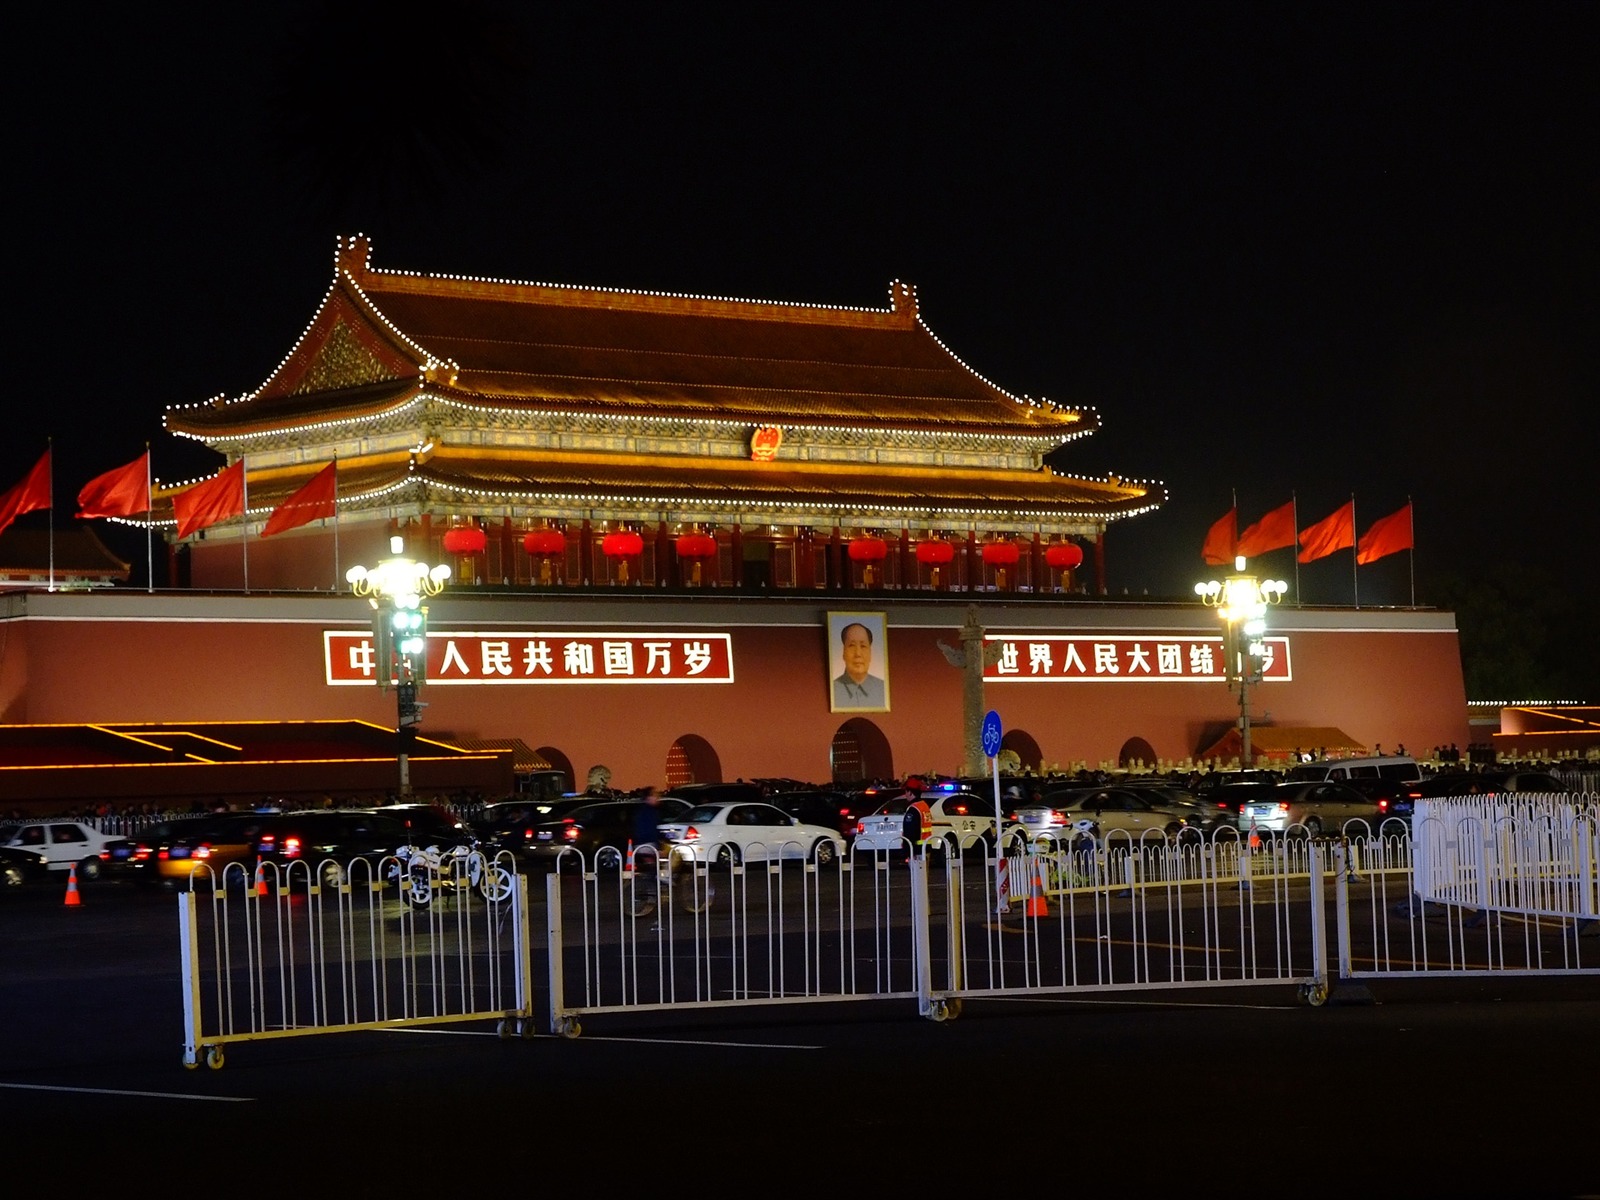 La Plaza de Tiananmen colorida noche (obras barras de refuerzo) #30 - 1600x1200